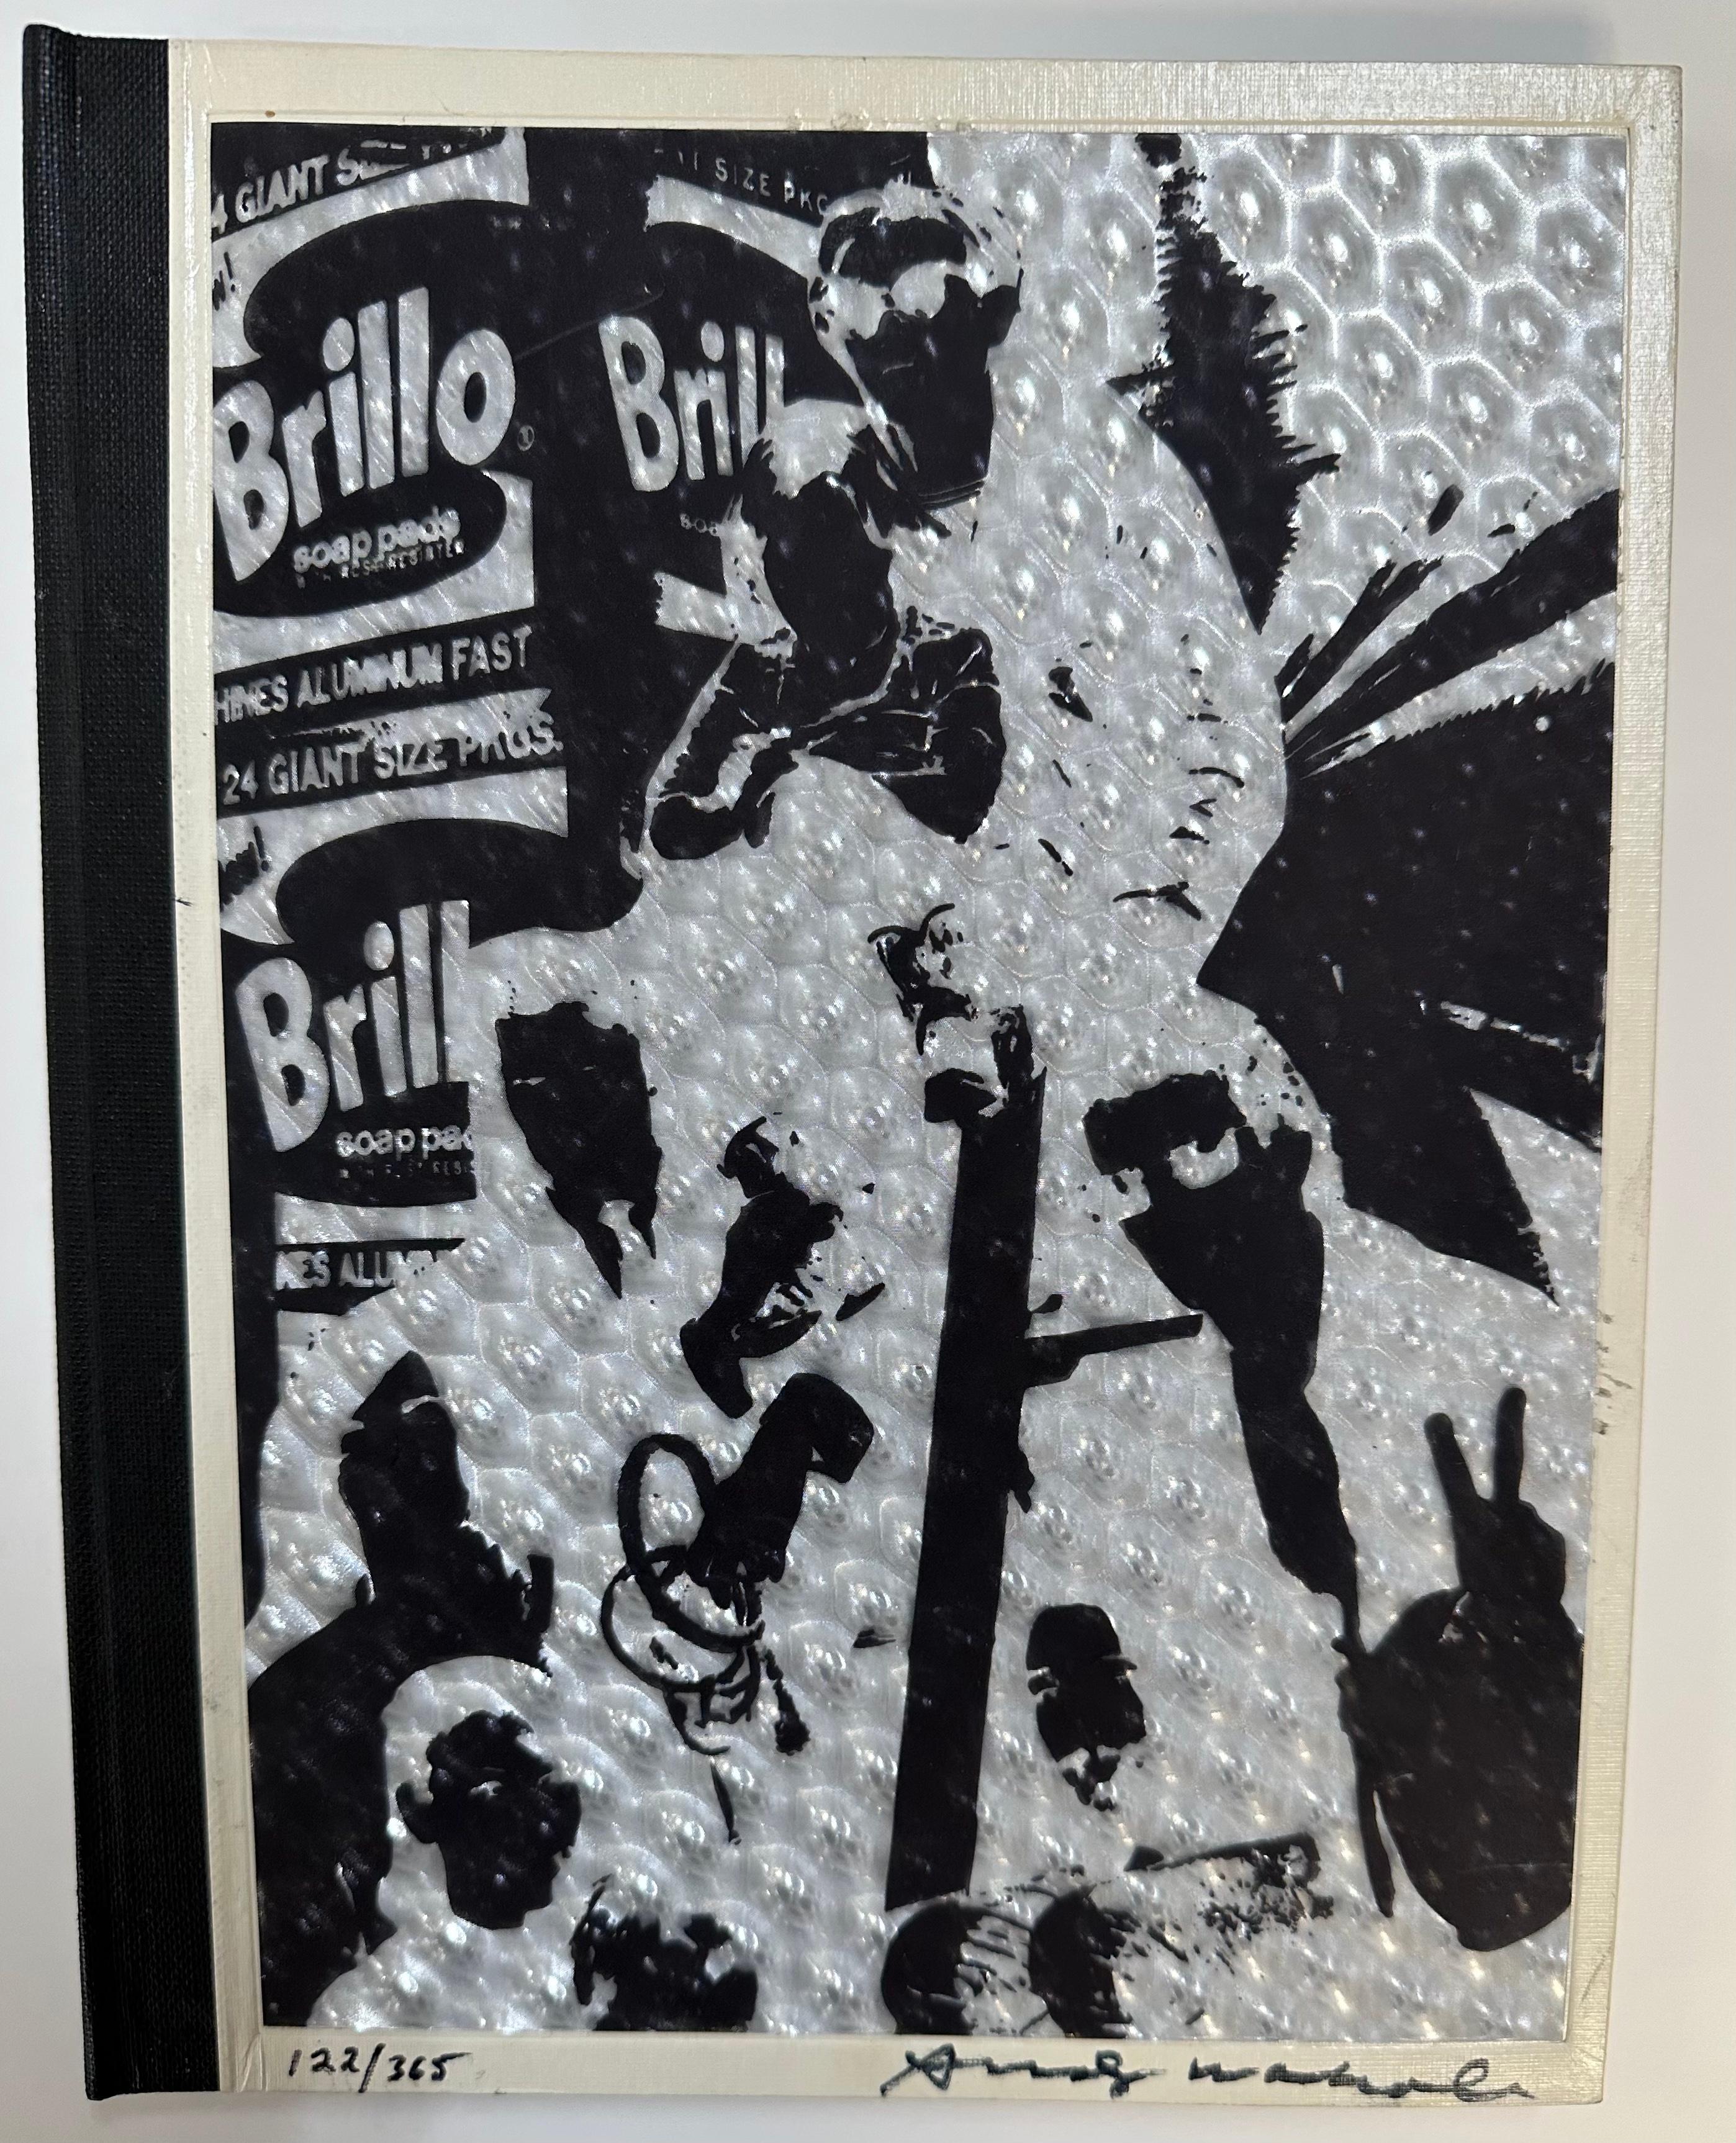 Andy Warhol
Index (Livre)
1967
Signé à la main par Warhol sur la couverture et plusieurs autres pages du livre.
Numéroté 122/365 de l'édition de 365.
Publié par Random House, New York

Complet avec un château pop-up, un accordéon en papier, un avion